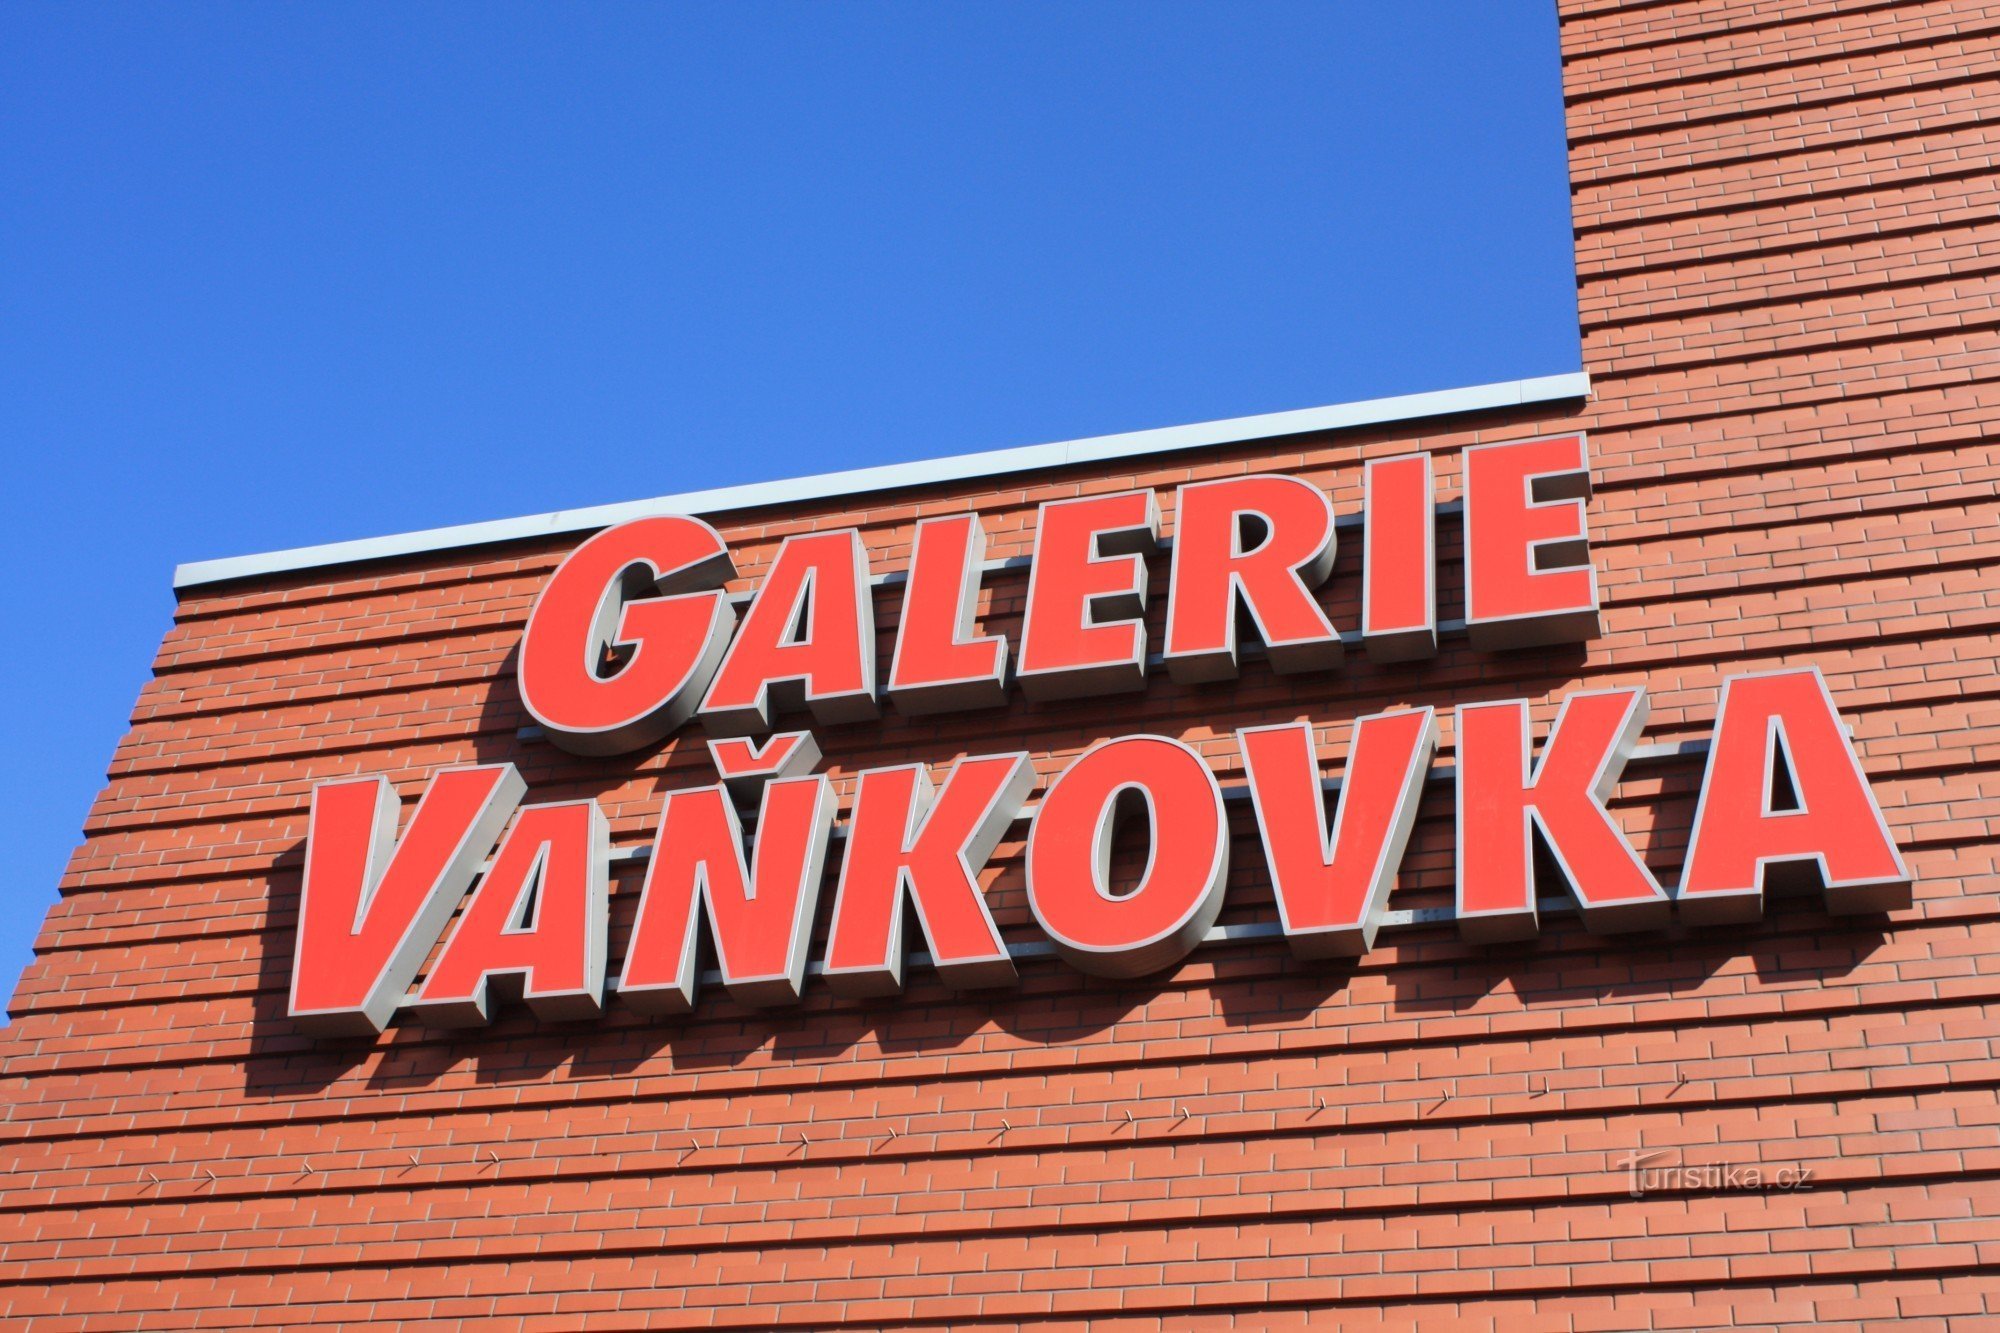 Gallery Vaňkovka